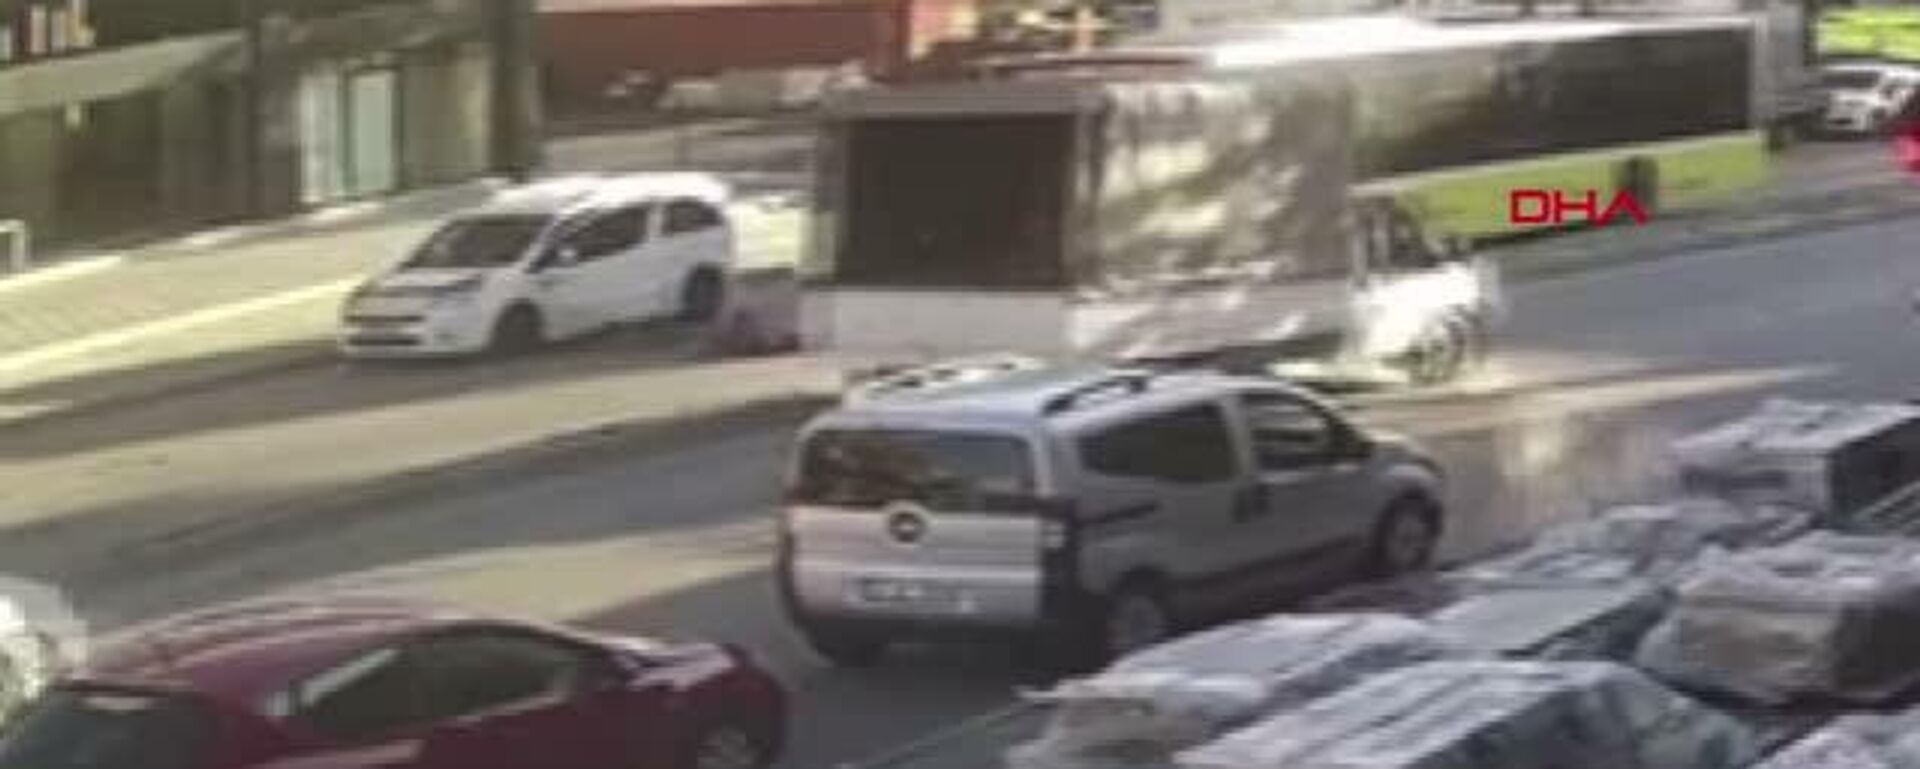 Ümraniye'deki scooter kazası: Hafif ticari aracının kapısını açan şoföre 6 yıl hapis talebi - Sputnik Türkiye, 1920, 02.12.2021